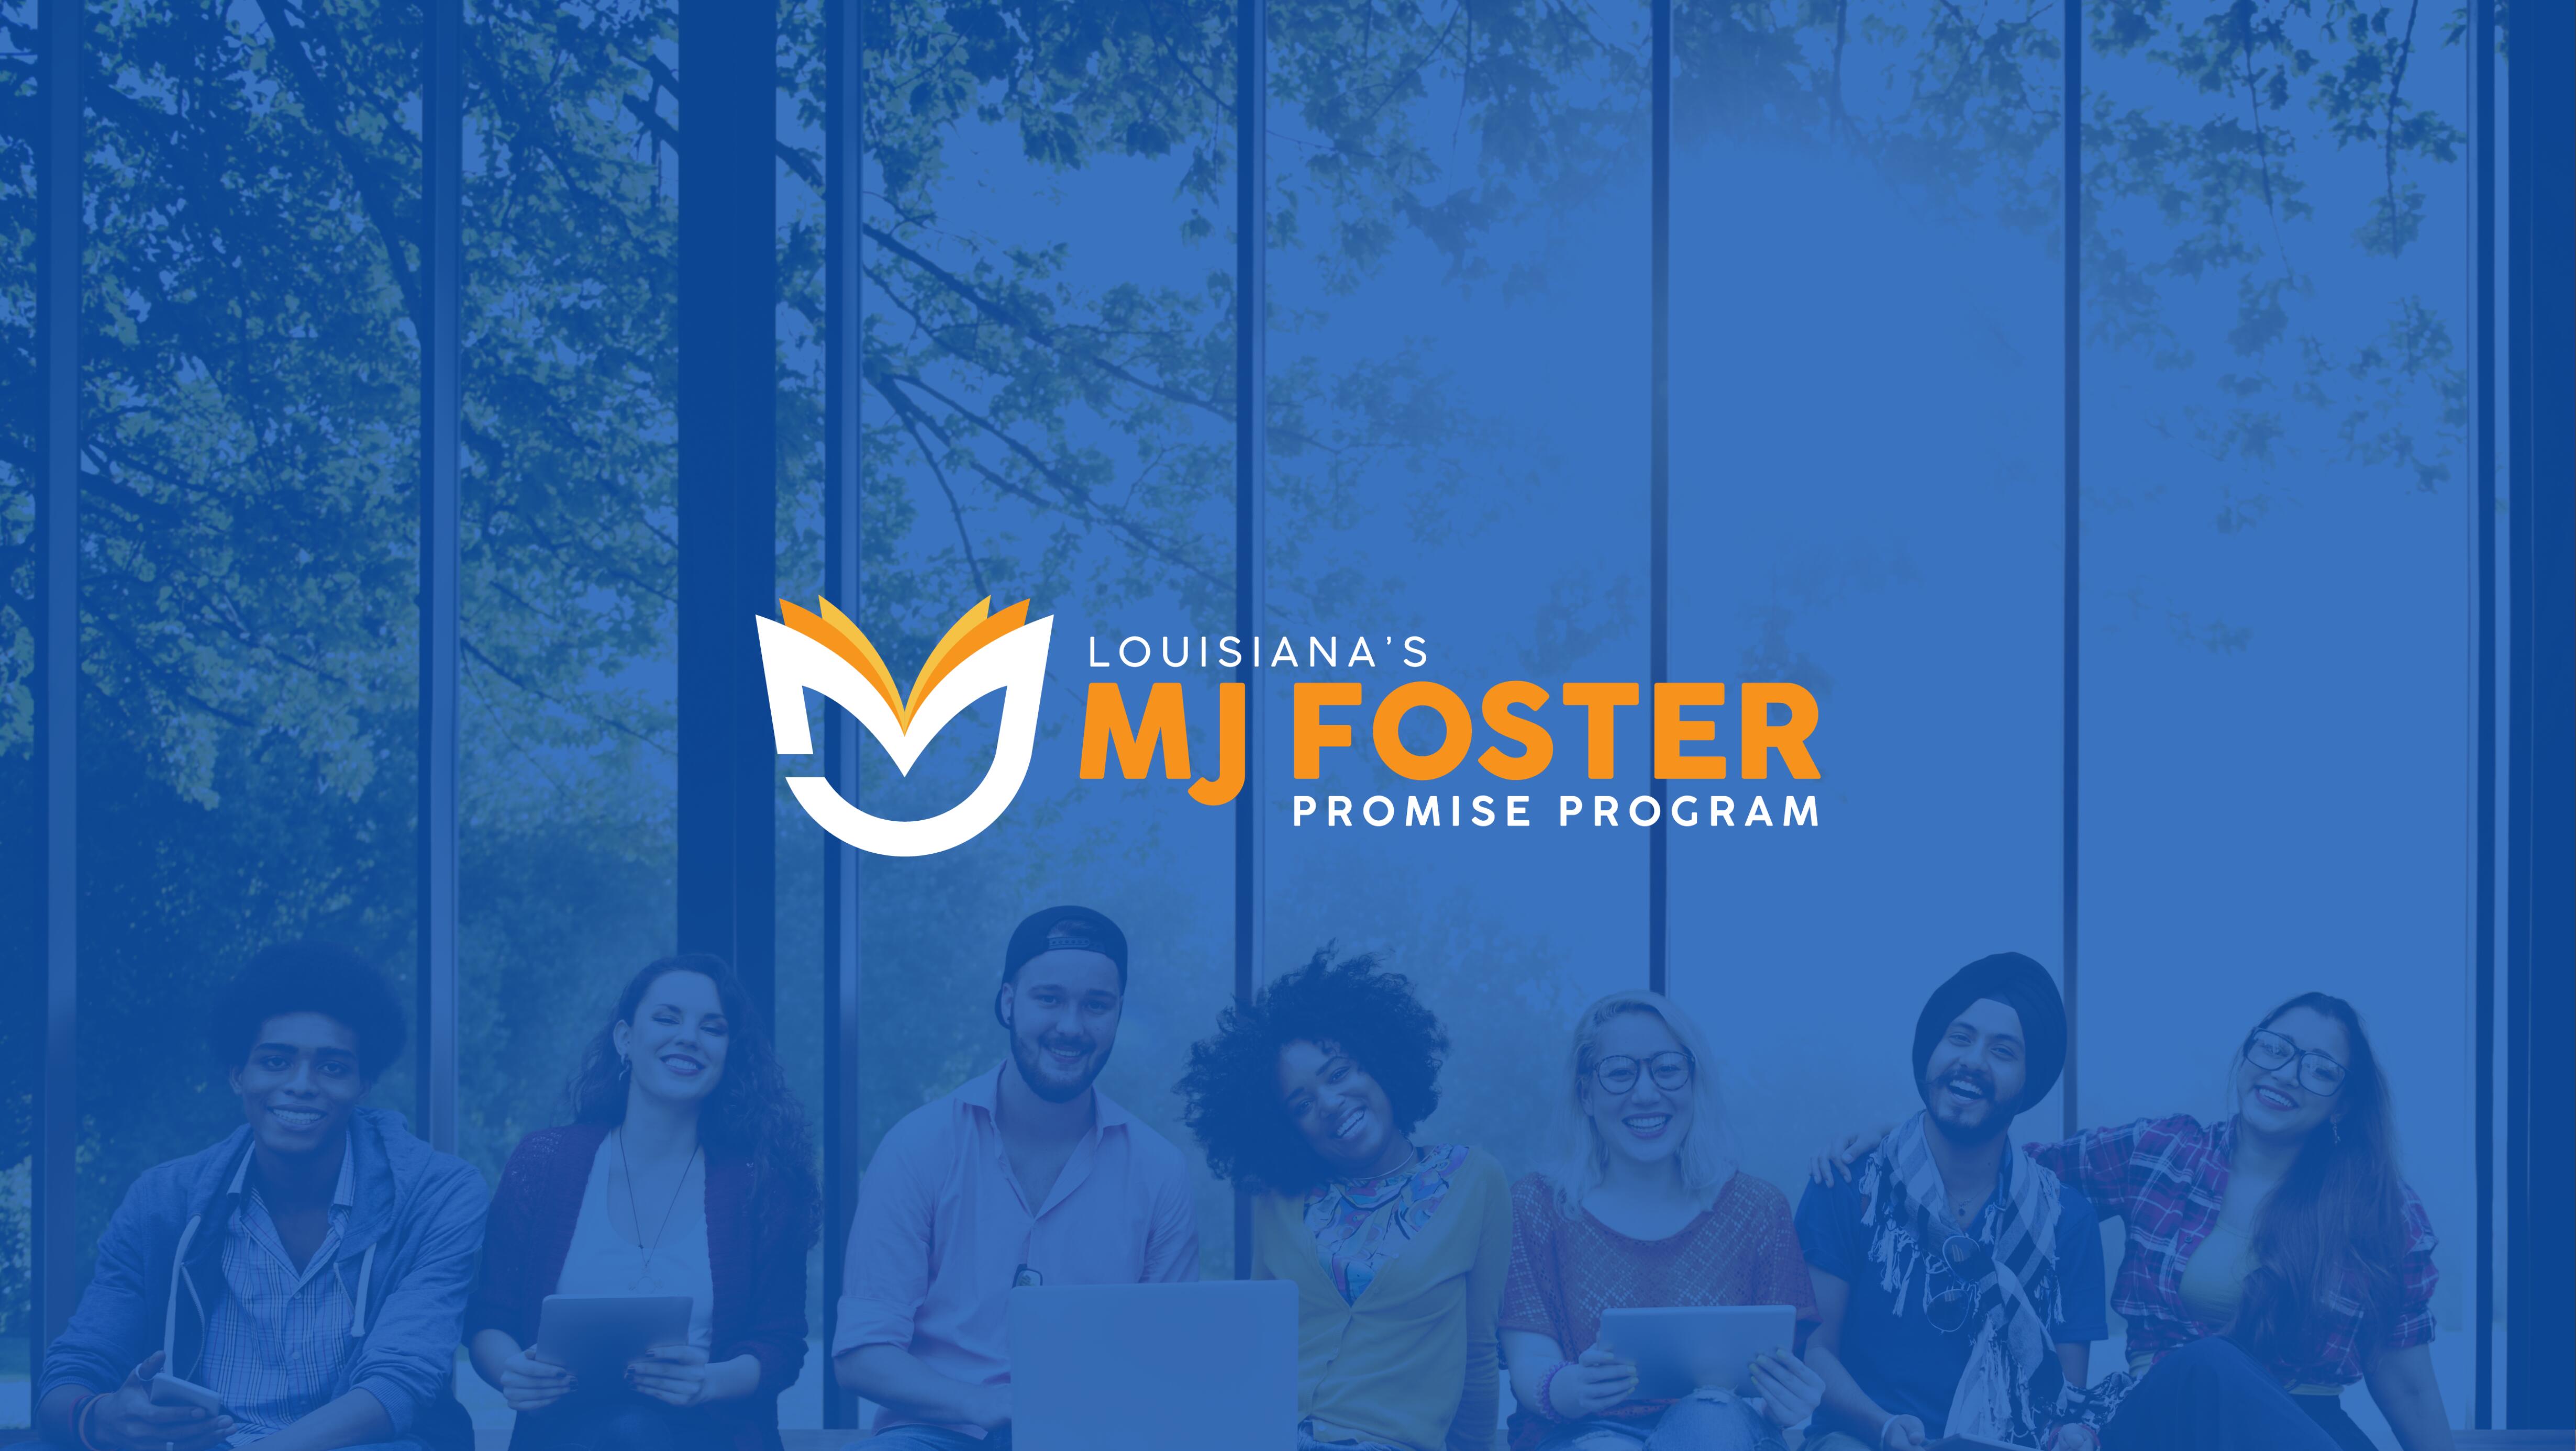 Louisiana's M.J. Foster "Promise" Program banner